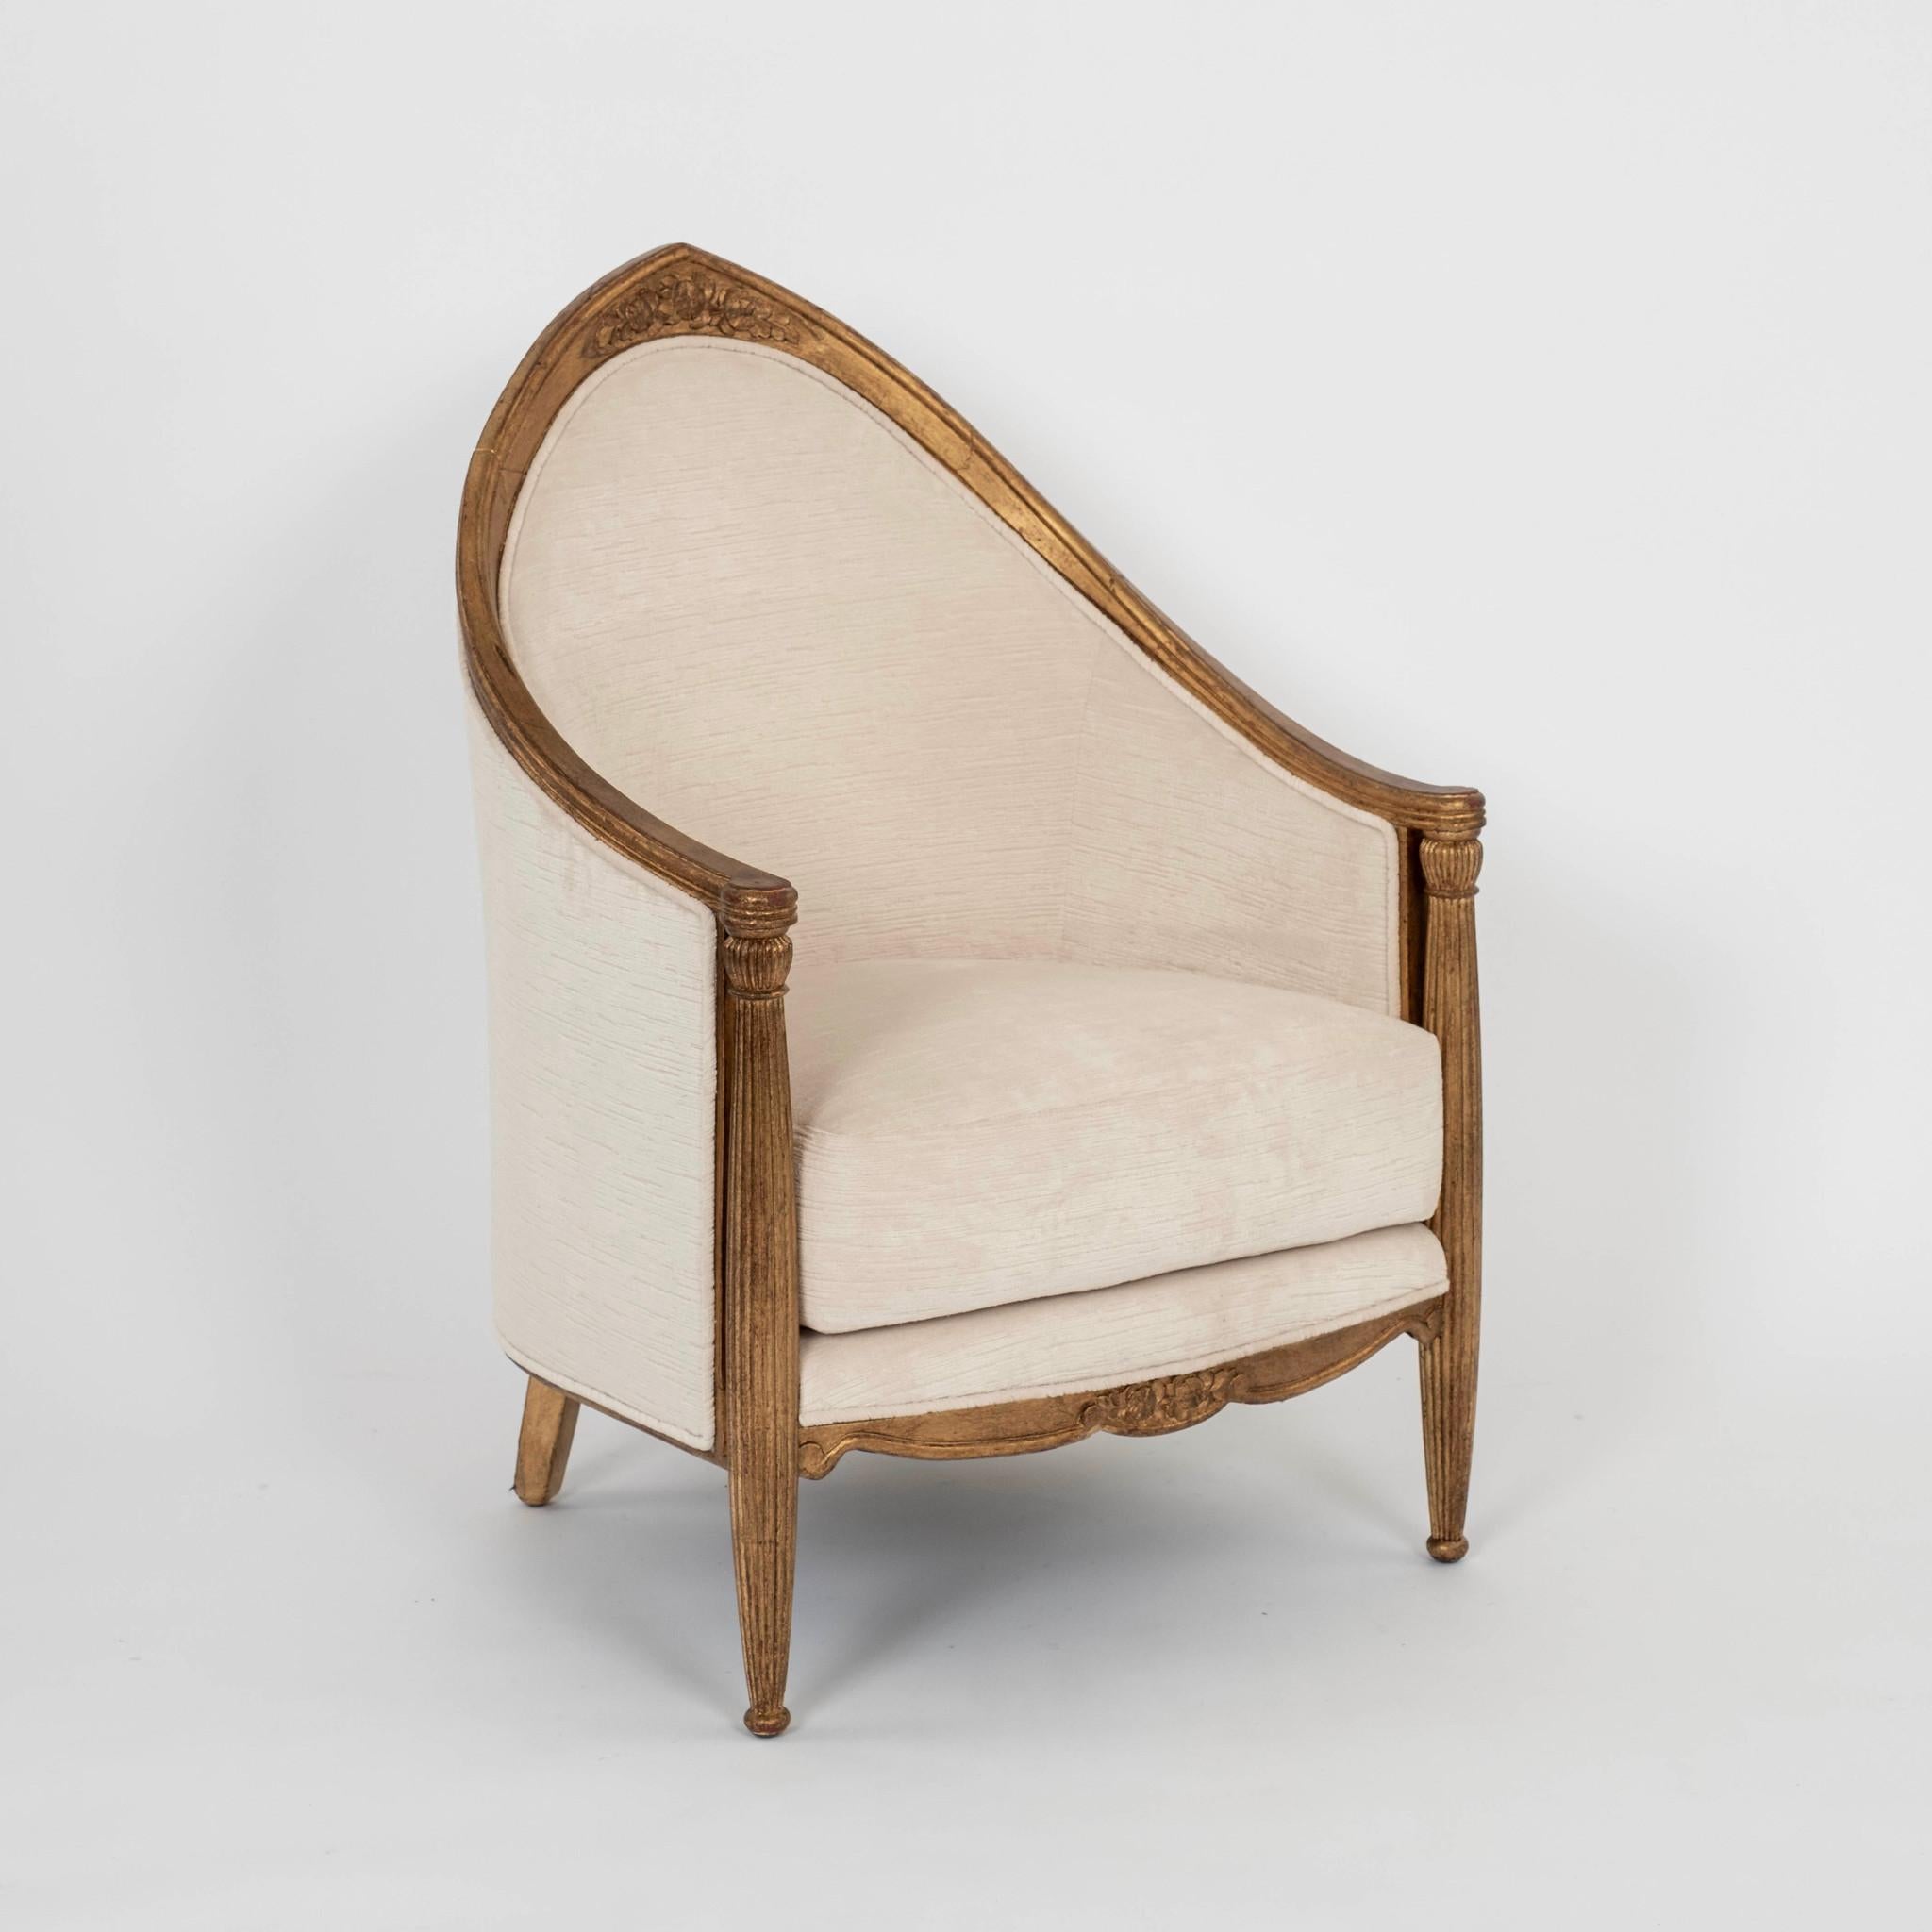 Zwei vergoldete Paul Follot-Bergére-Stühle im französischen Art Déco-Stil, neu gepolstert mit gestreiftem ecrufarbenem Samt.

Vier Stück verfügbar, paarweise verkauft. 
$14.800,00 Paar.